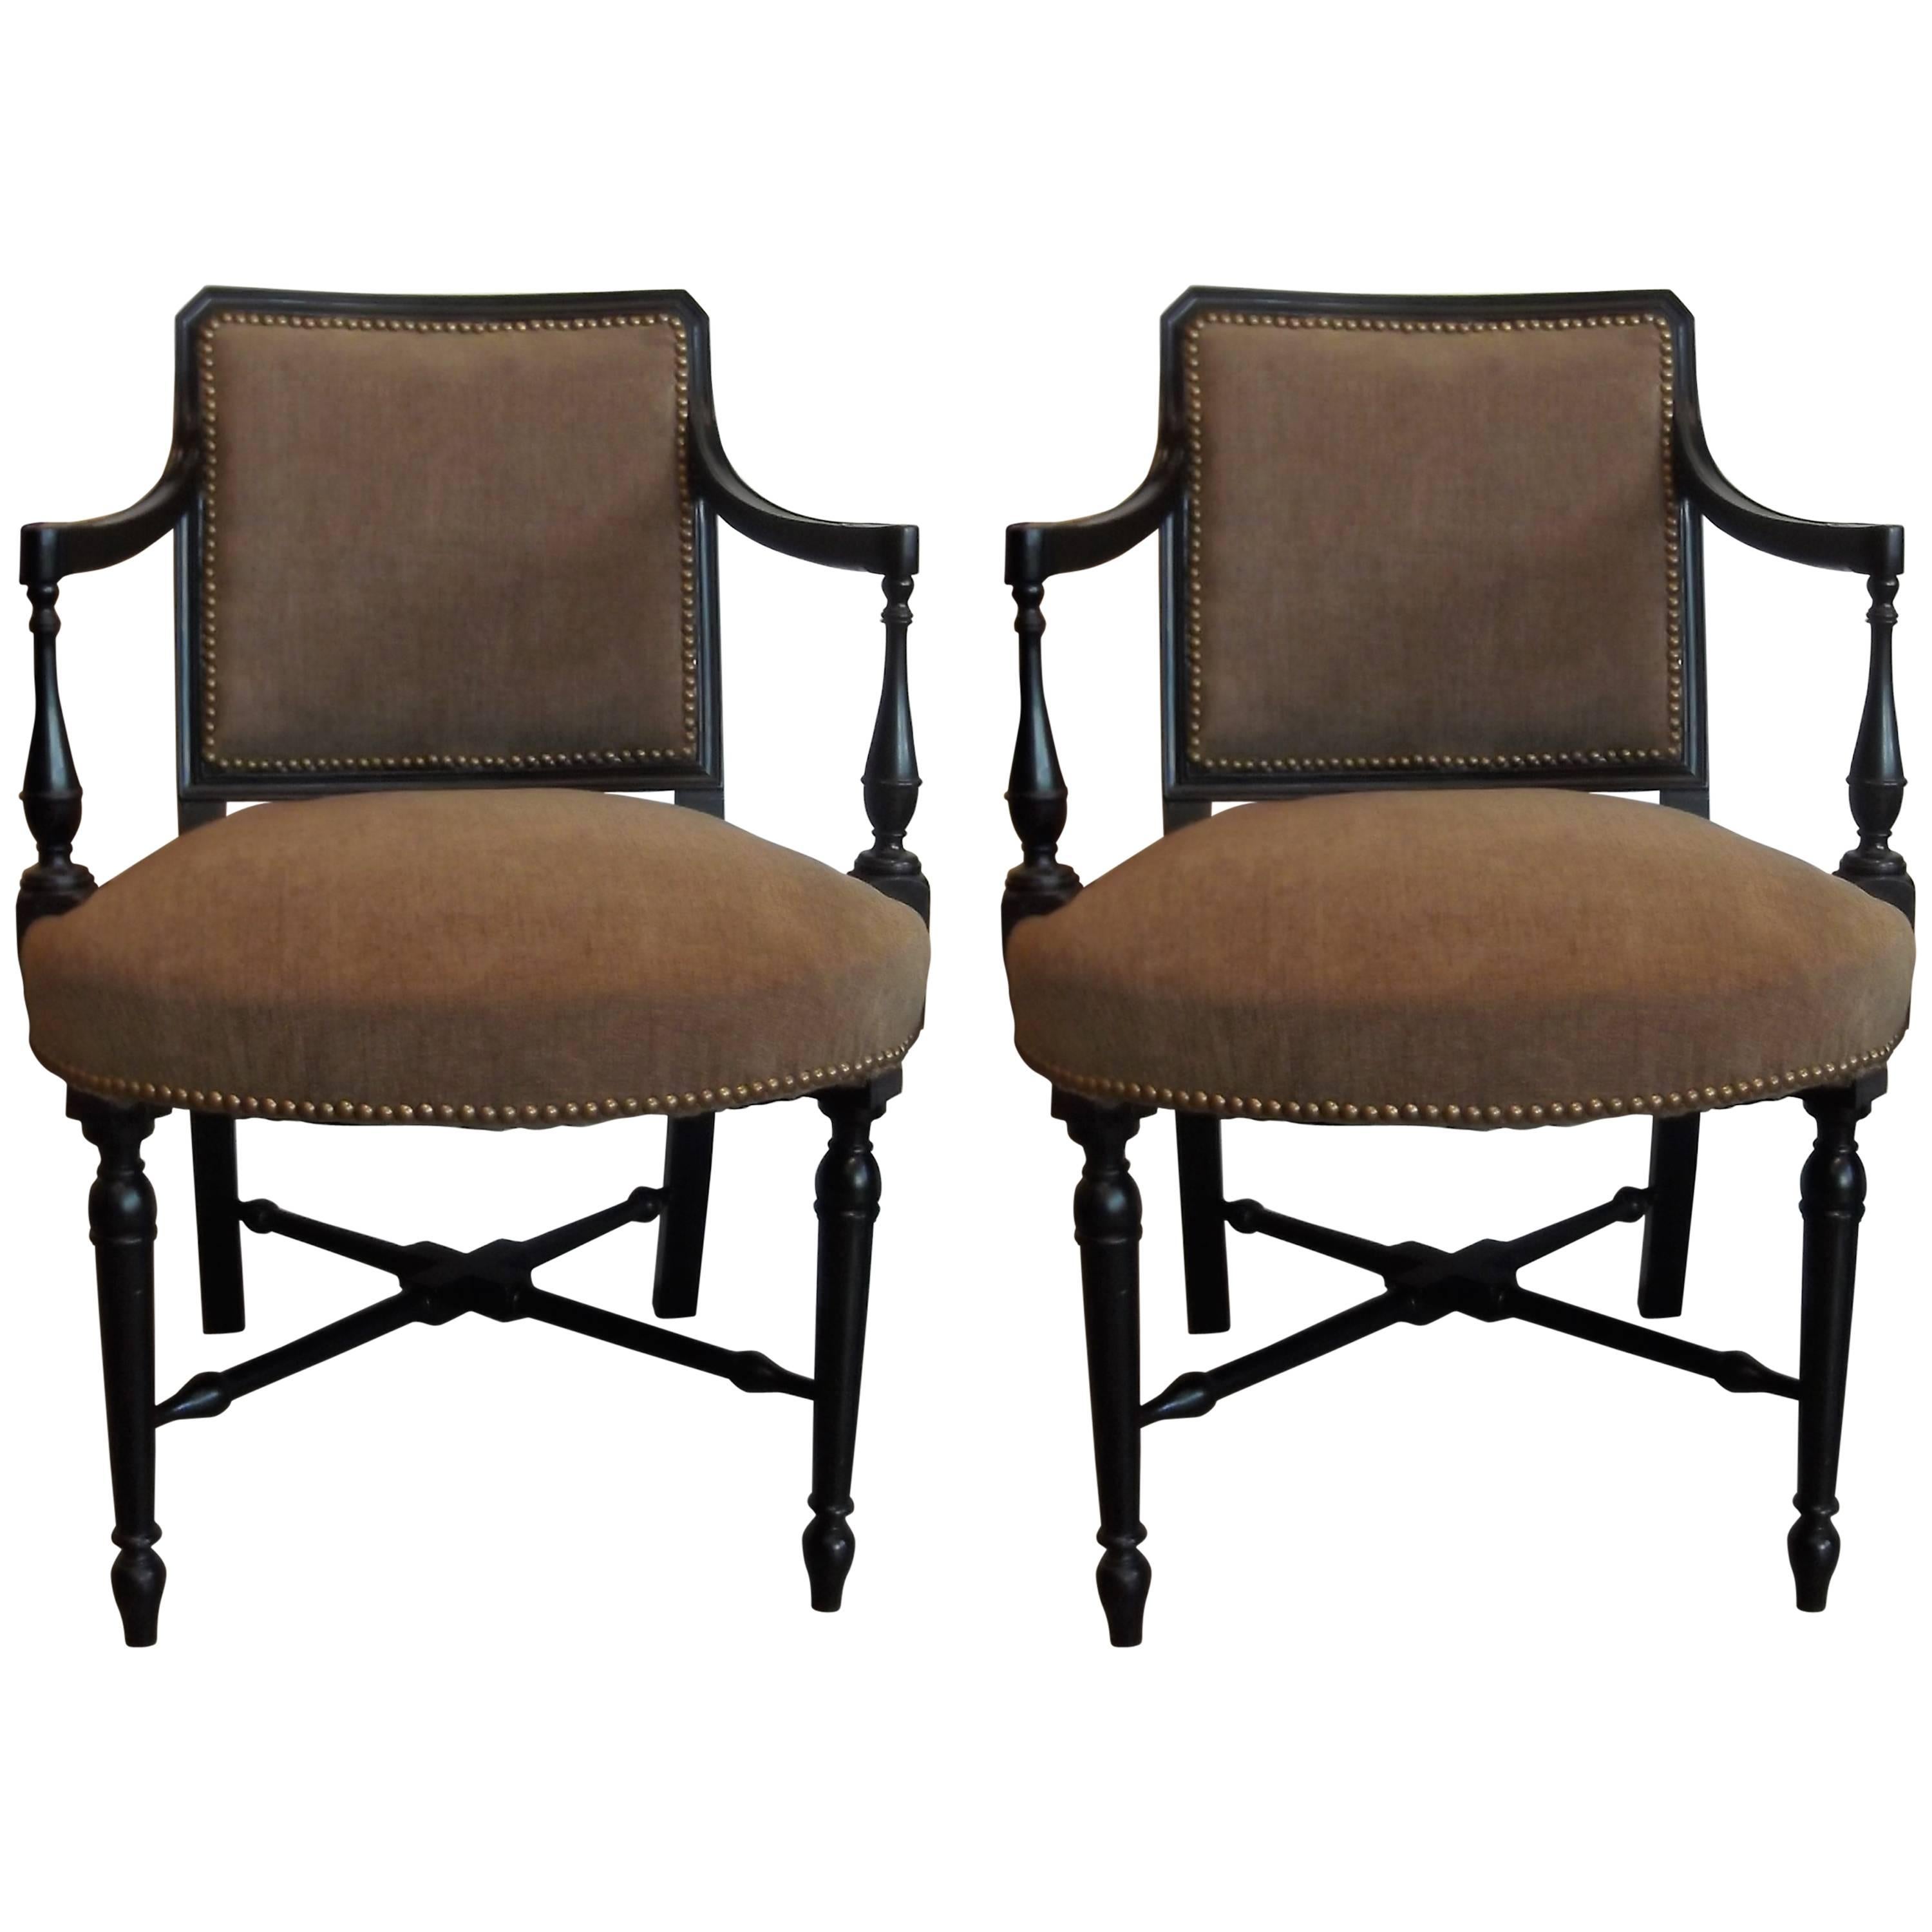 Pair of Edwardian Ebonized Upholstered Arm Chairs